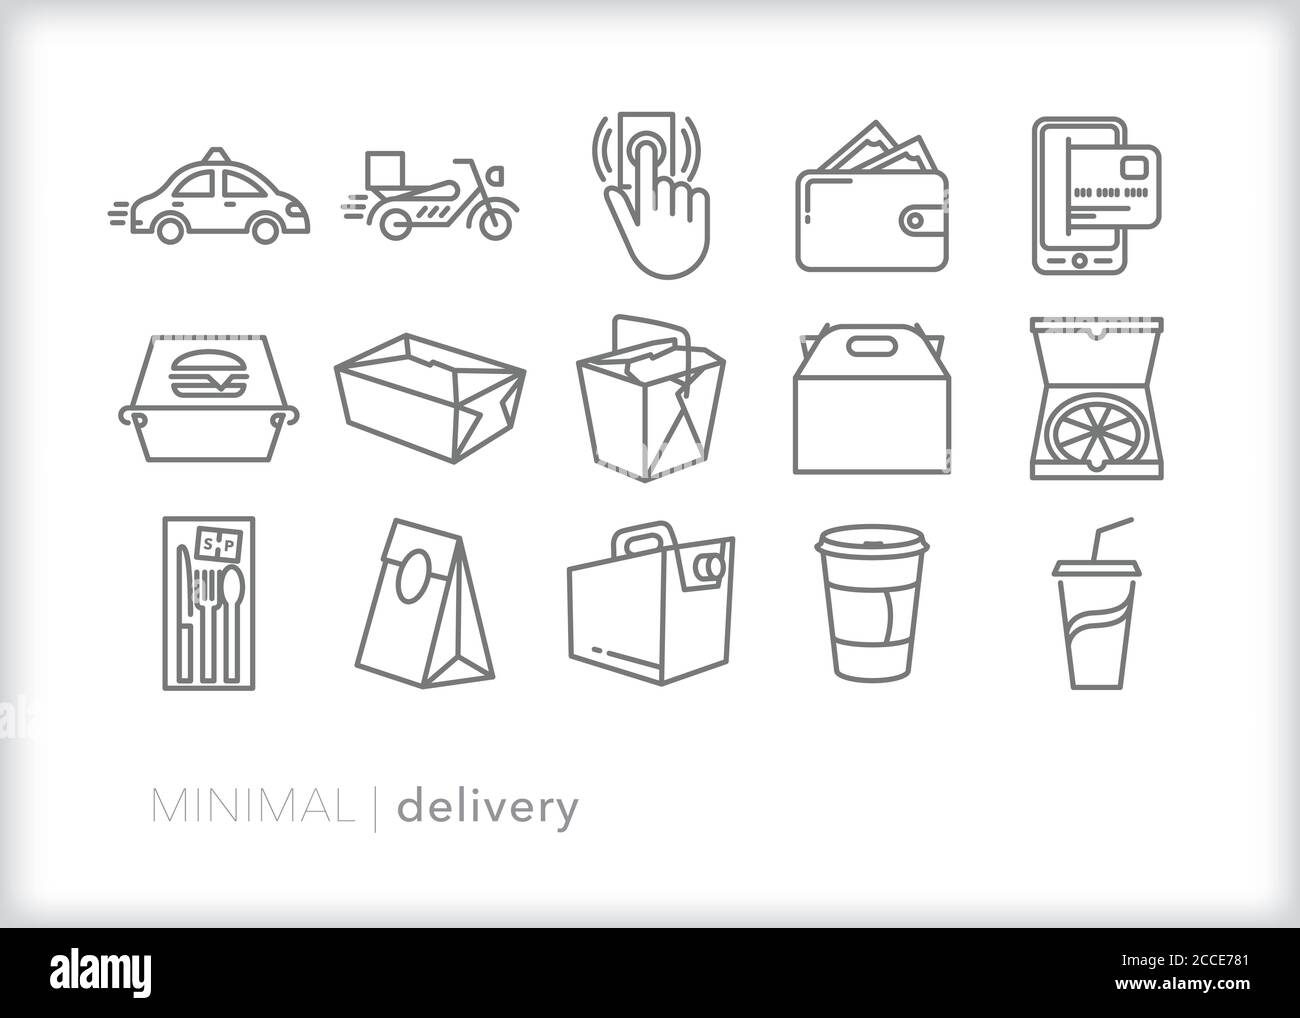 Set mit 15 Symbolen für die Lieferung von Lebensmitteln für die Bestellung von Mittagessen, Abendessen und Kaffee, die mit dem Auto oder Fahrrad geliefert werden Stock Vektor